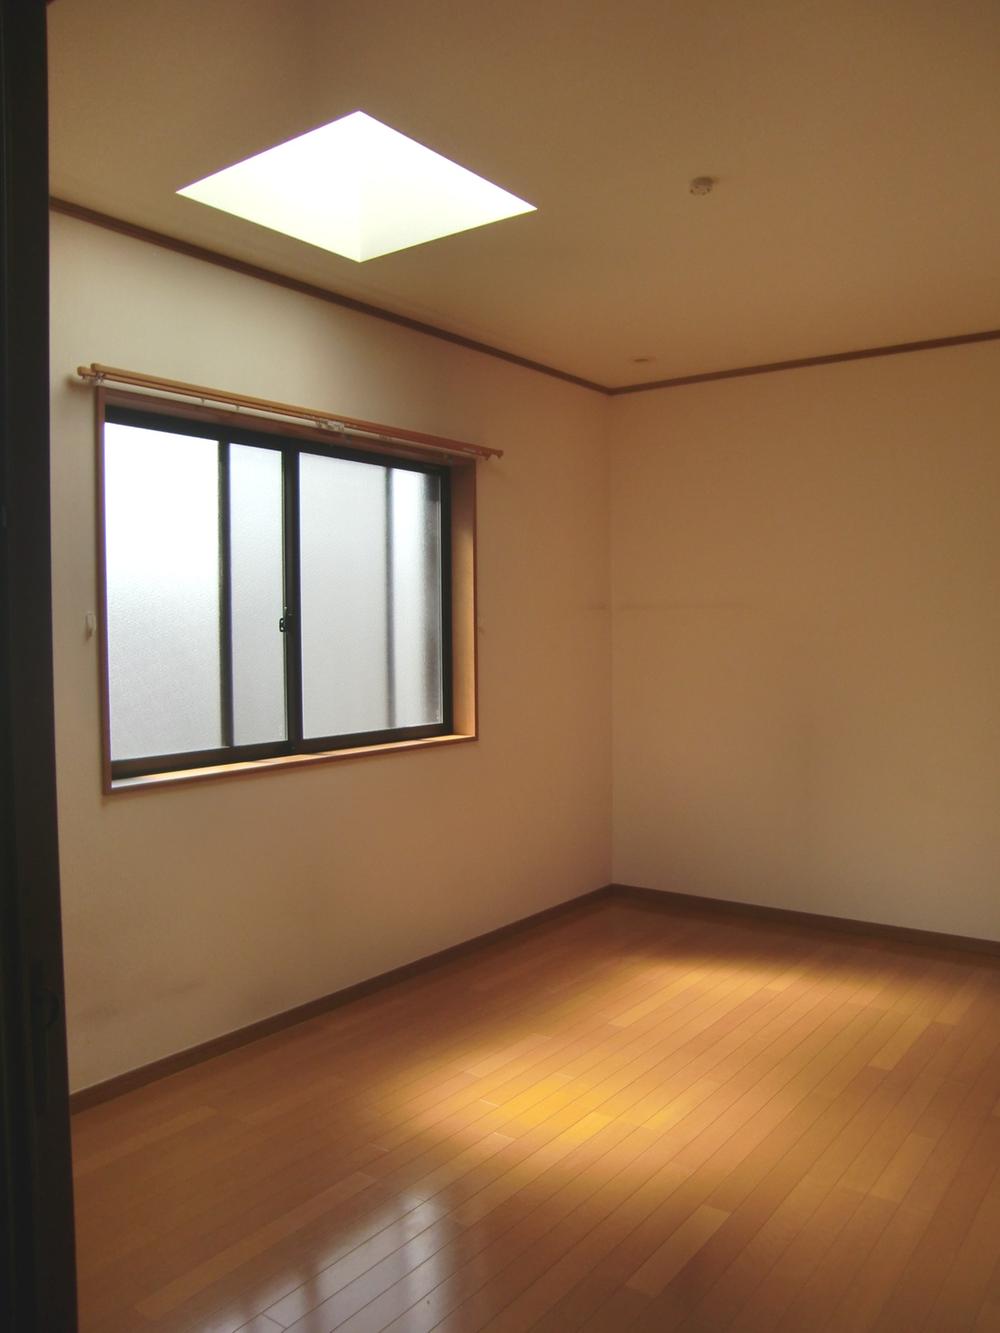 Non-living room. 2 Kaiyoshitsu (October 7, 2013) Shooting